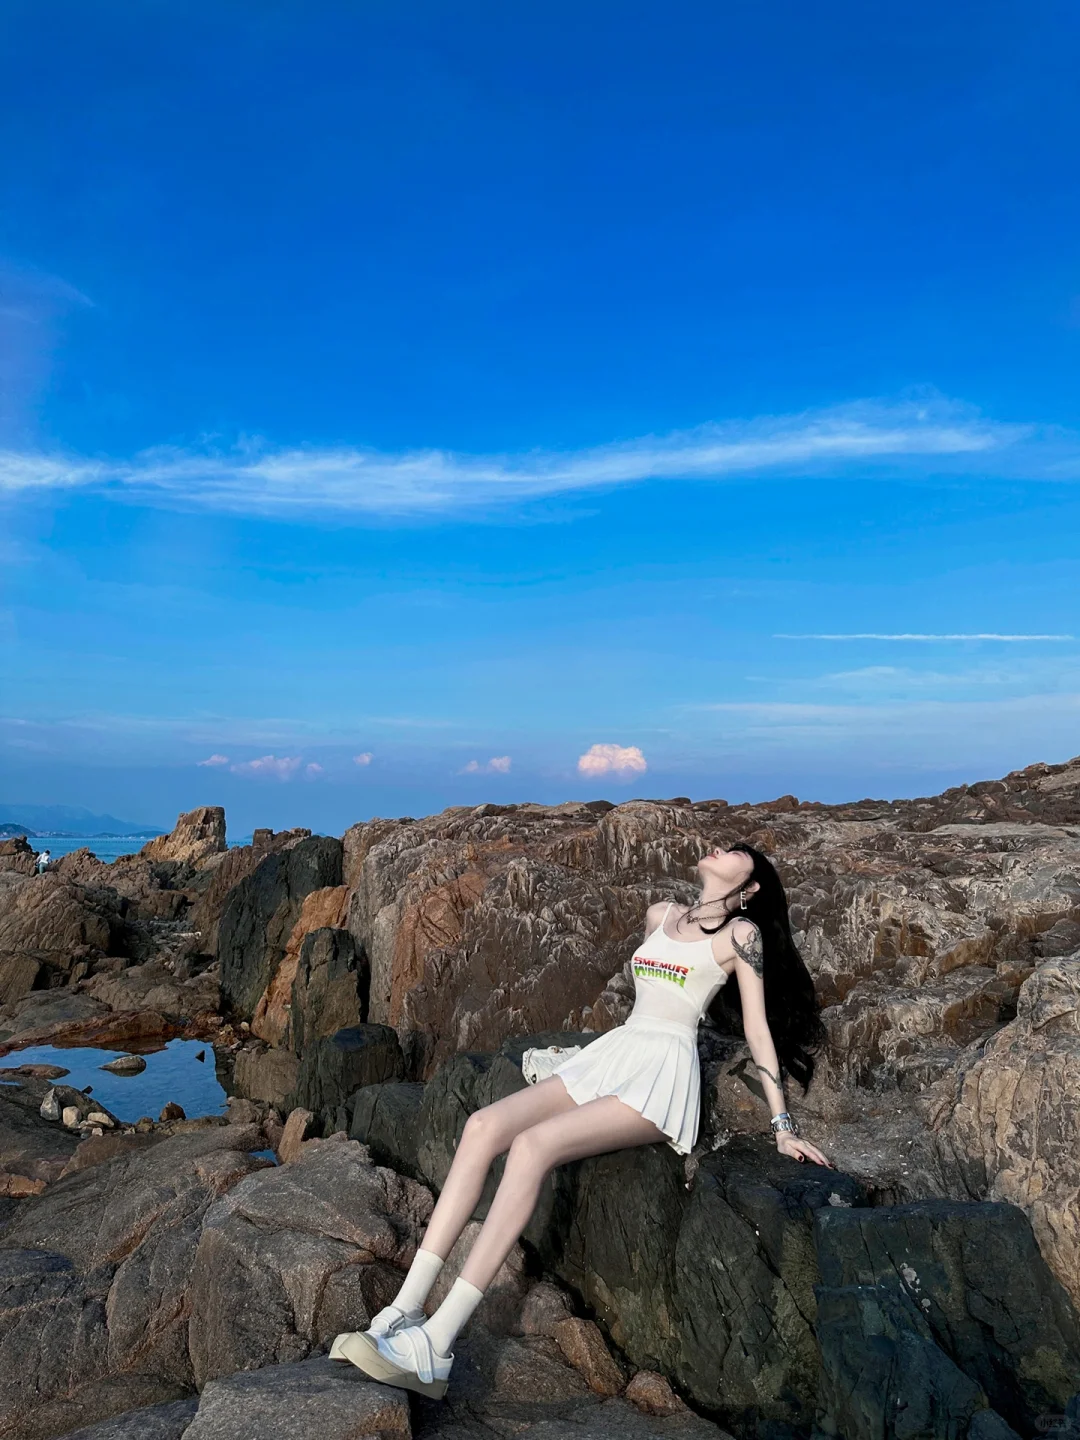 无糖奶油 老娘与海 #今日份海边  #海边拍照 #青岛